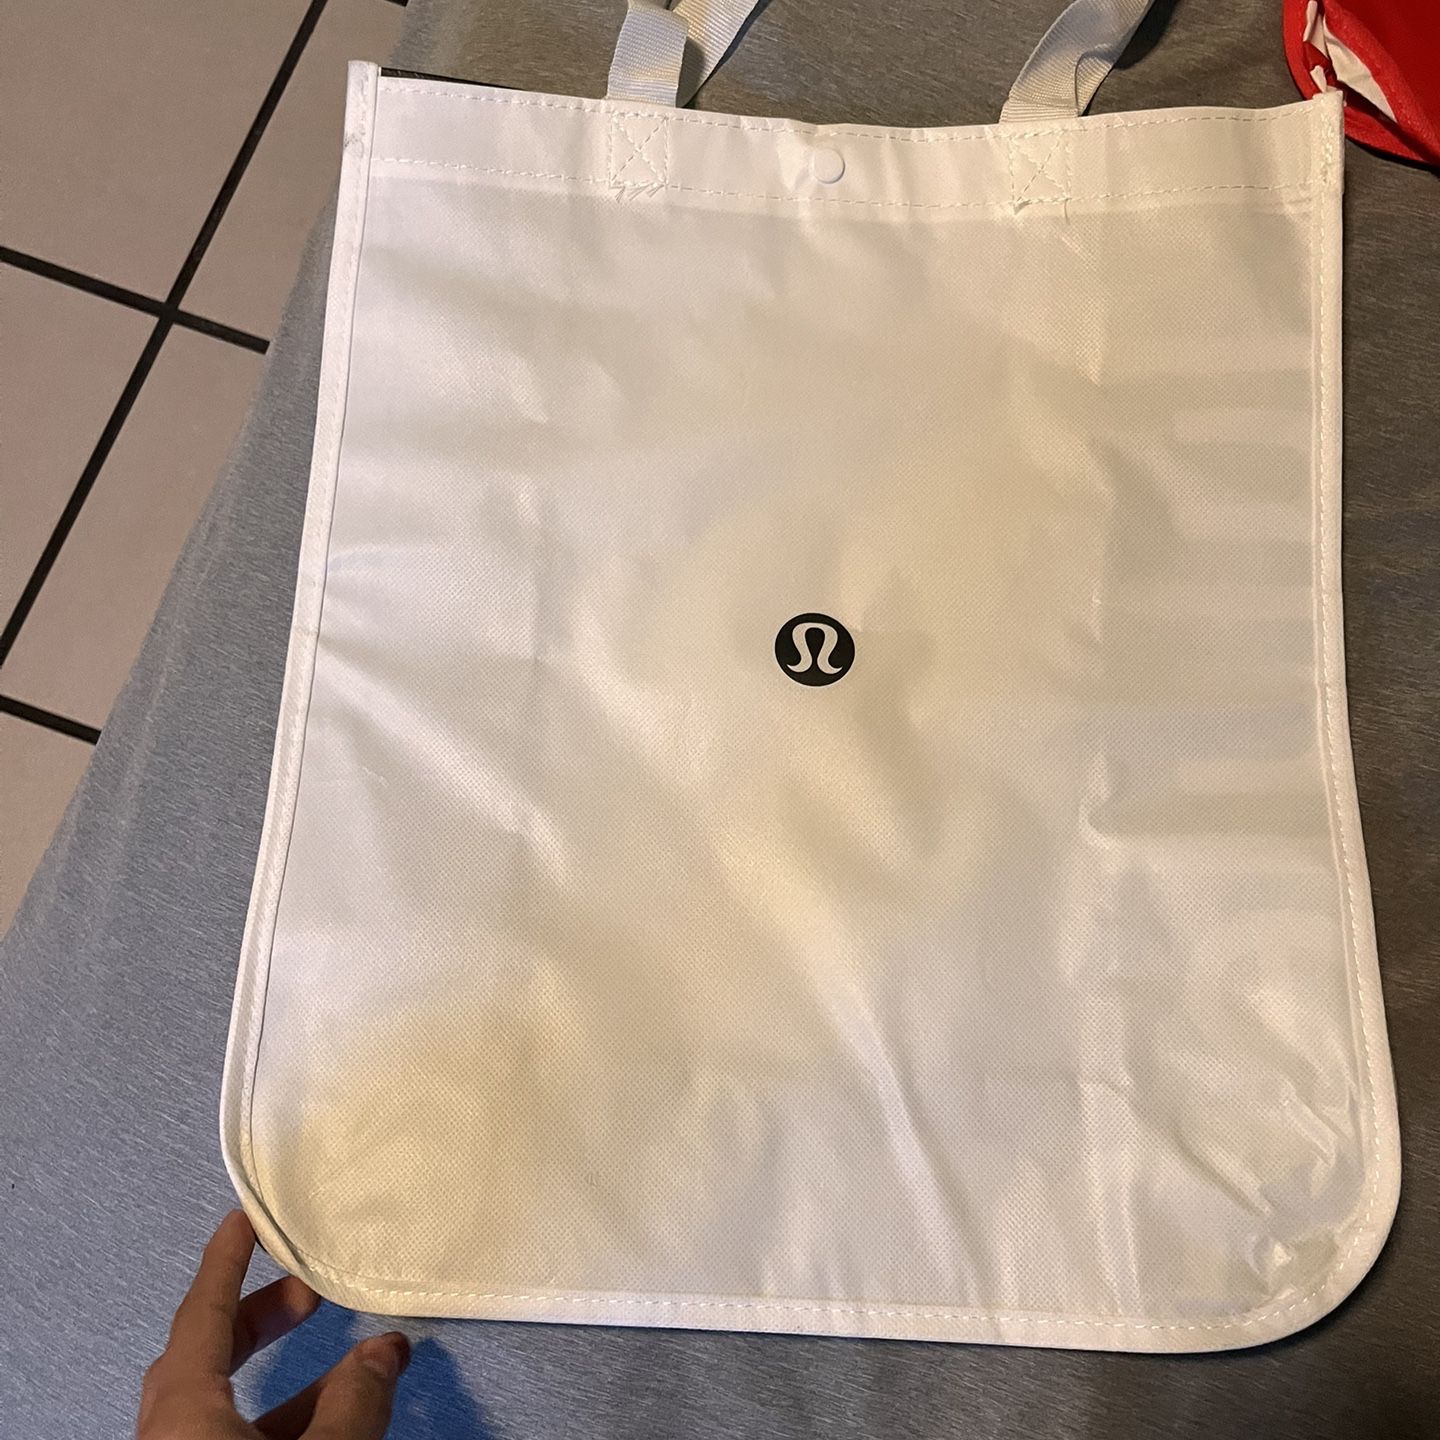 Lululemon White Bag for Sale in Norwalk, CA - OfferUp